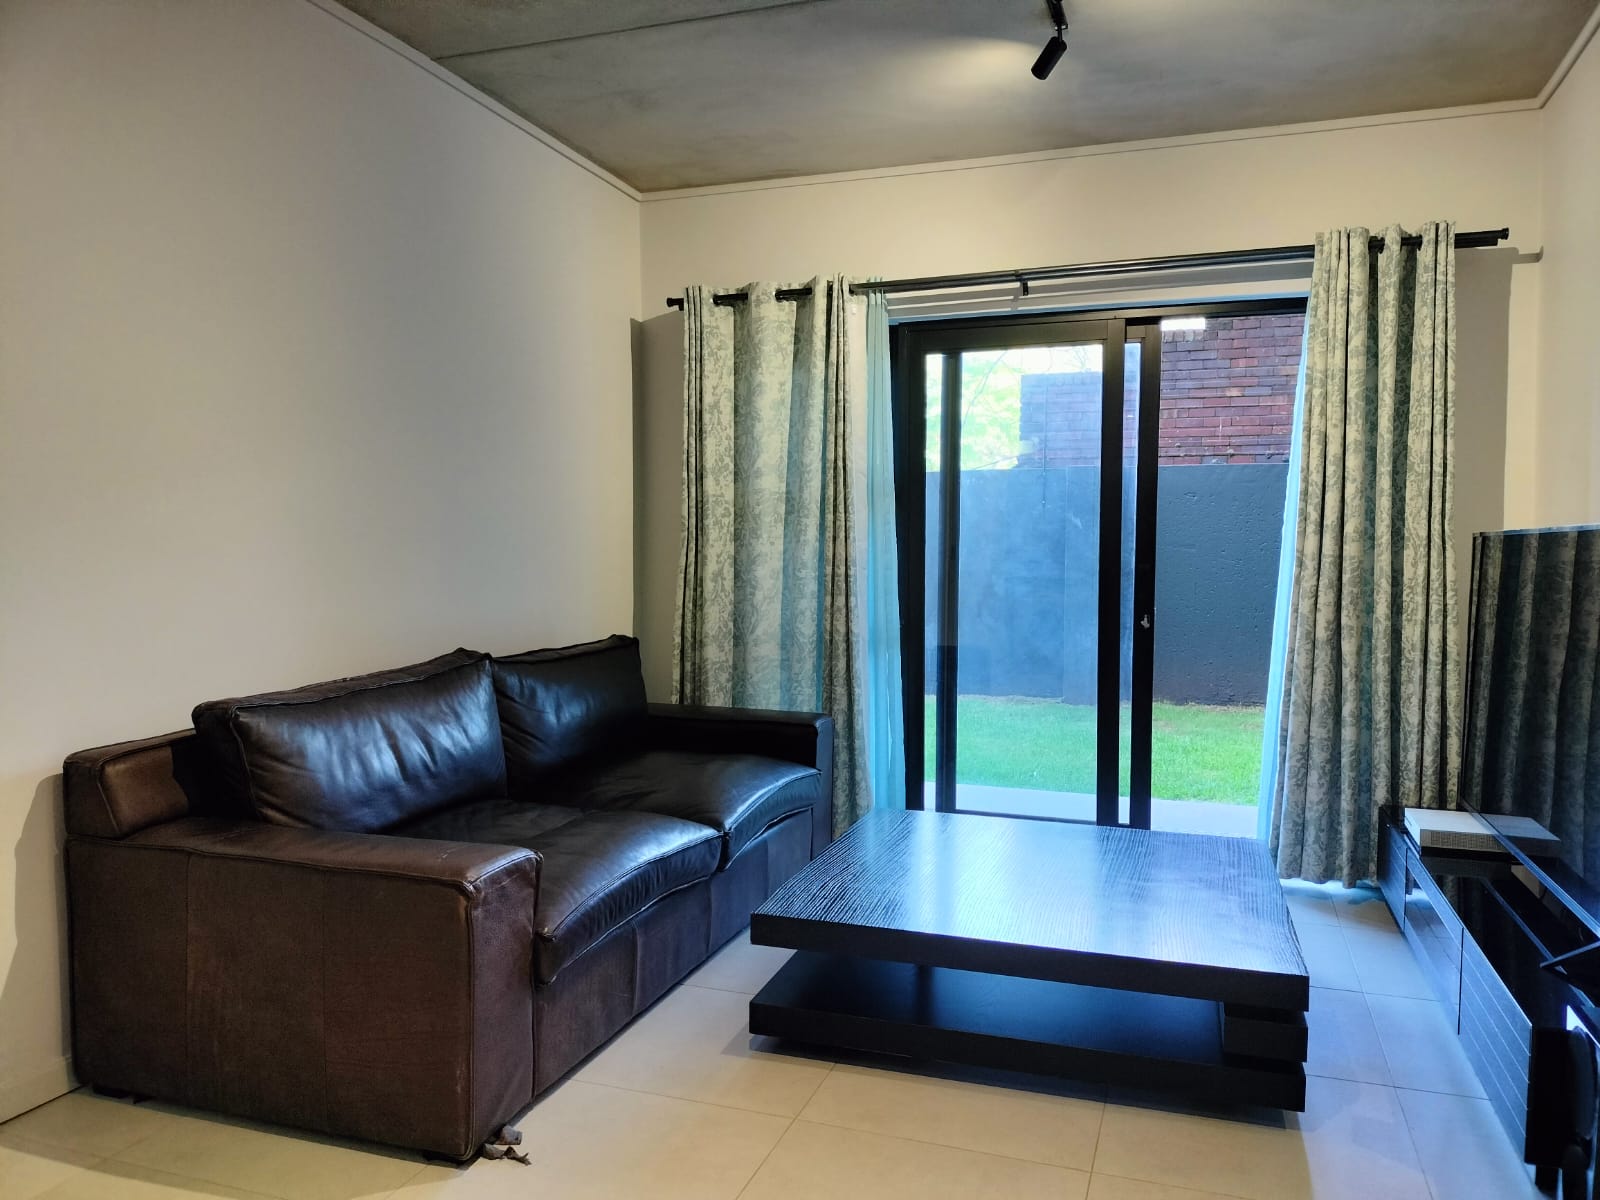 To Let 3 Bedroom Property for Rent in Waverley Gauteng